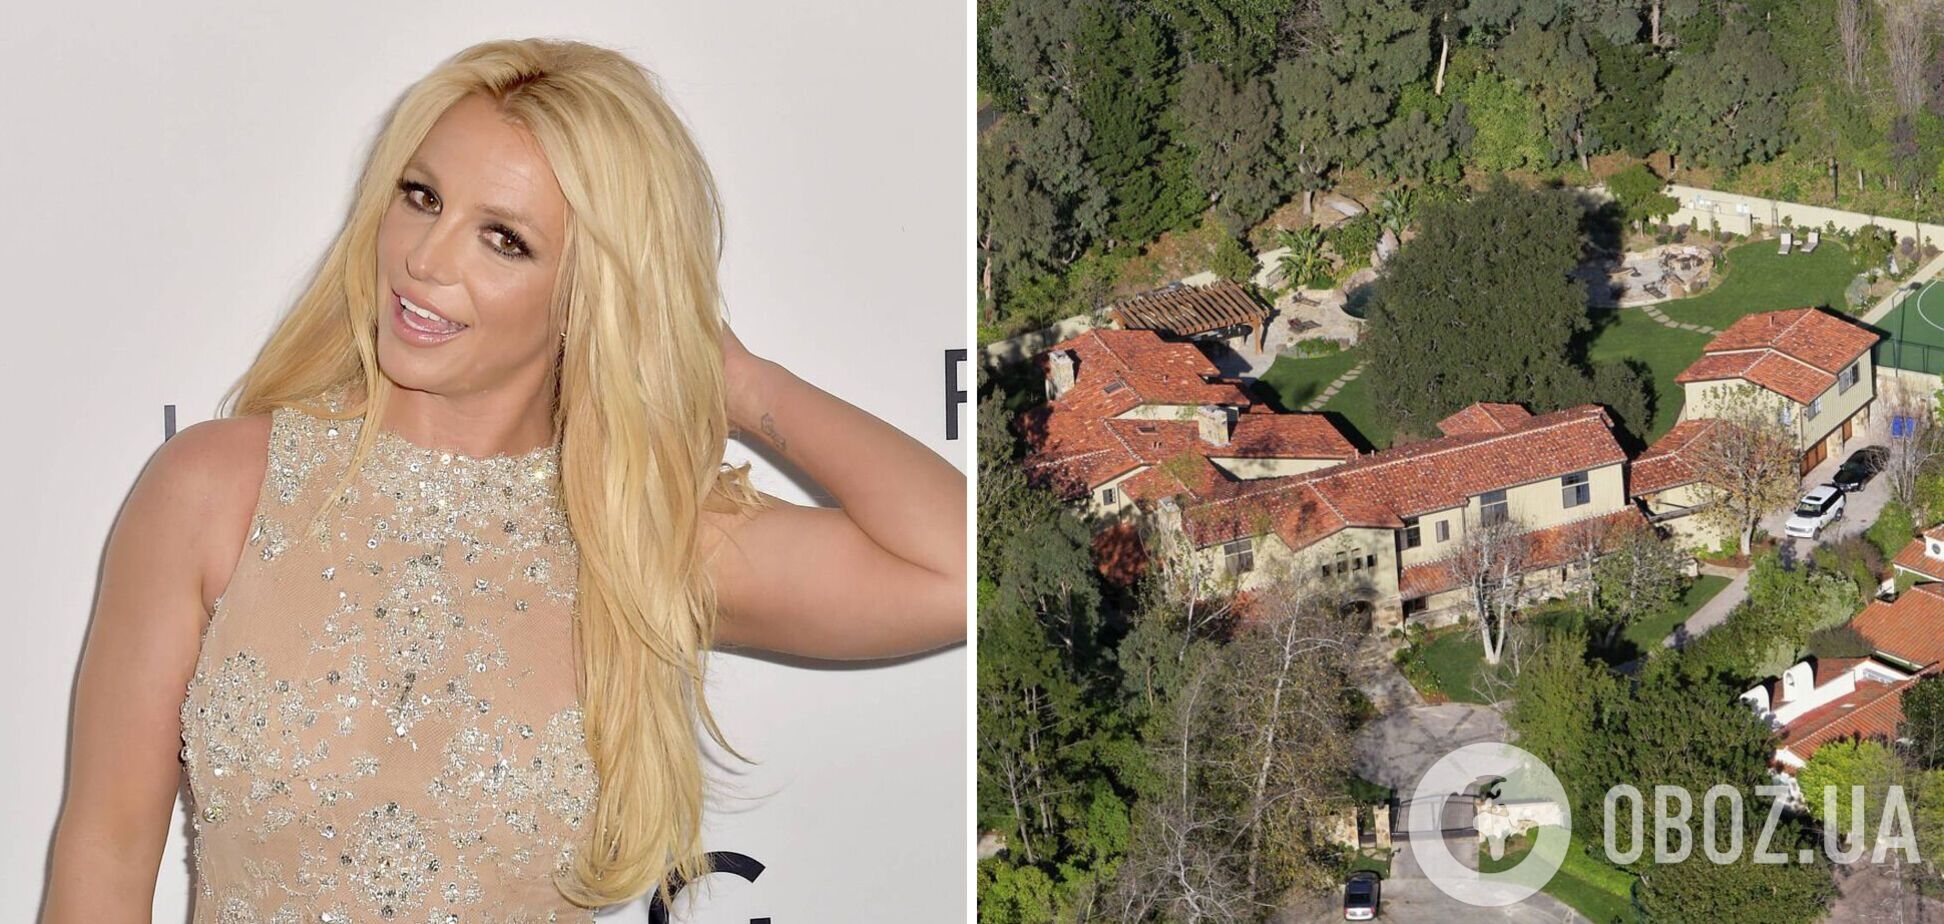 Появились фото элитных особняков Бритни Спирс: в каких условиях жила поп-звезда